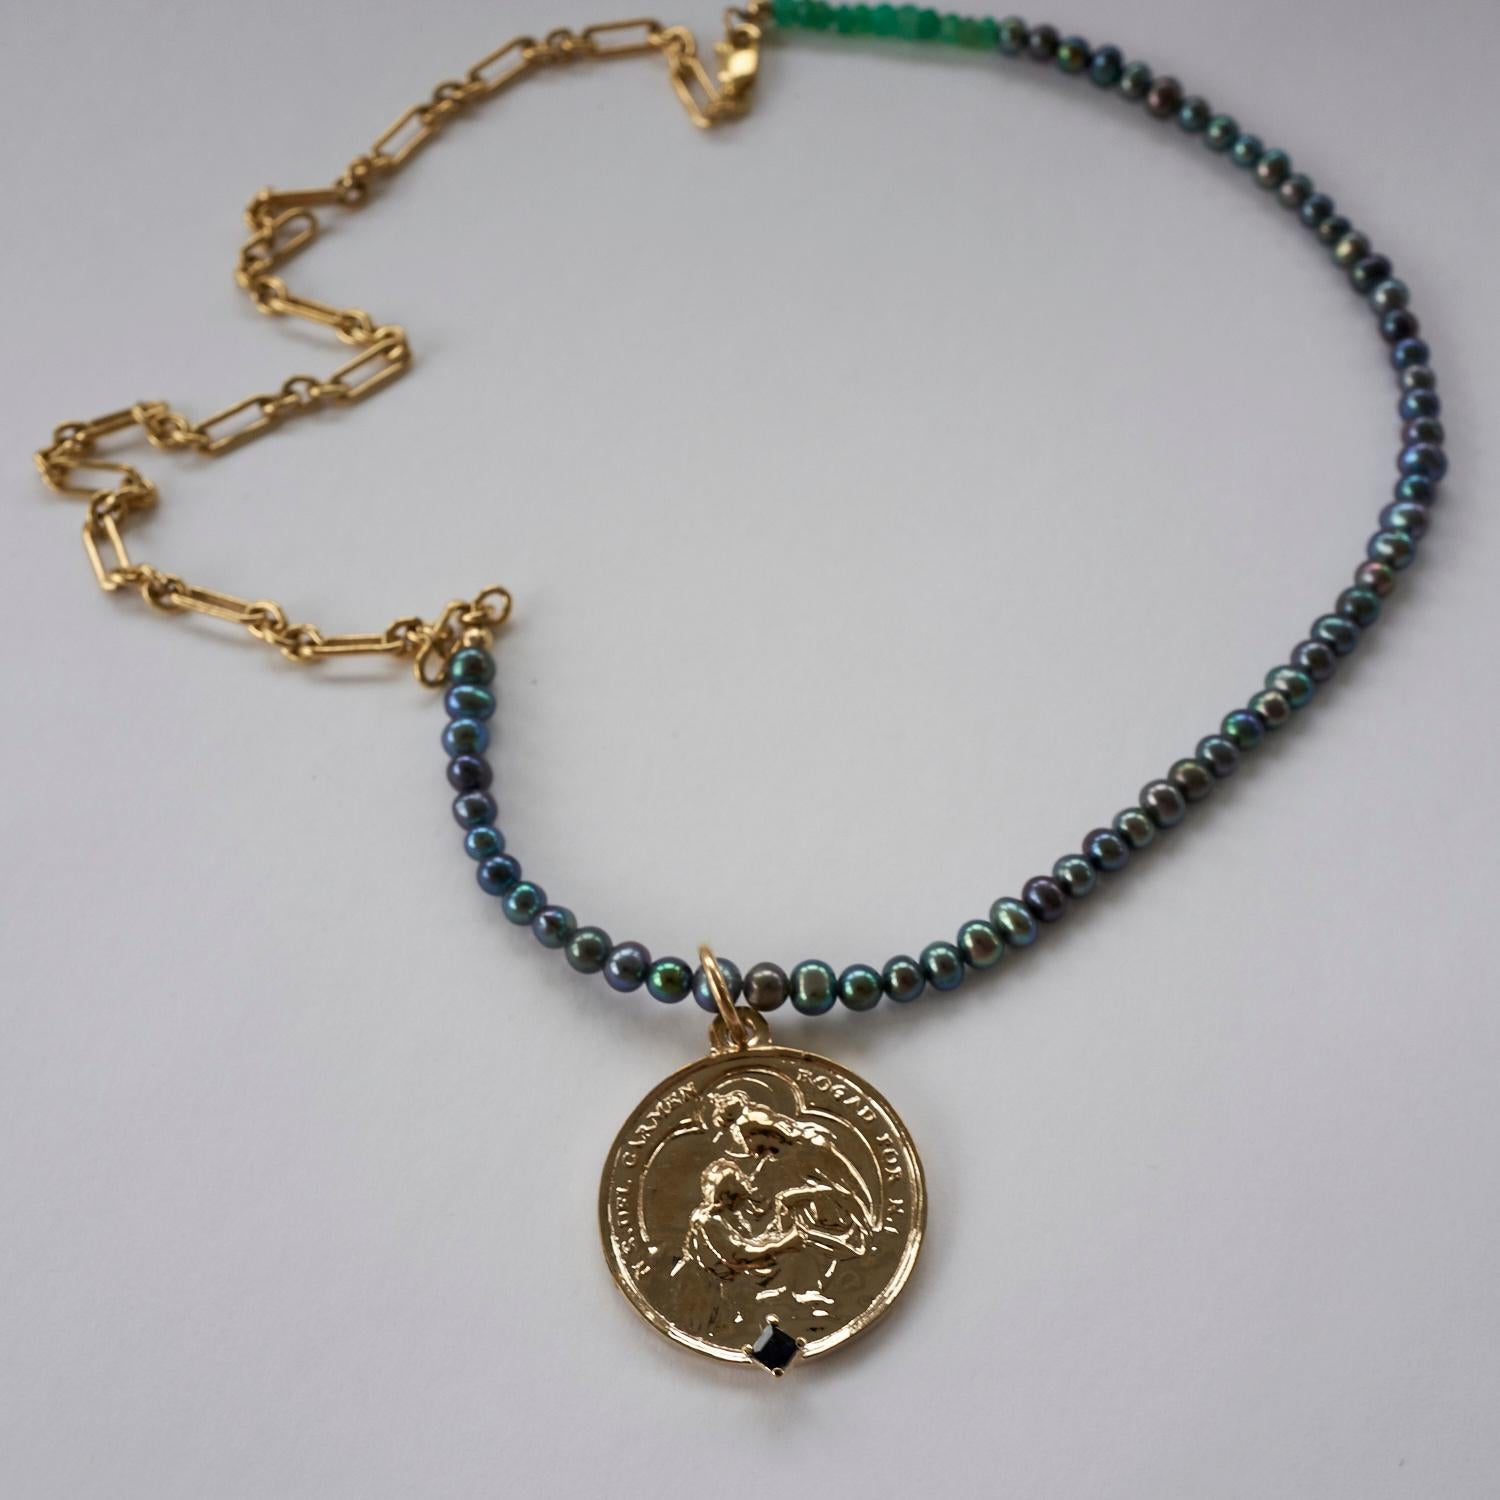 Saphir Jungfrau del Carmen Schwarz Perle Medaille Münze Anhänger Kette Halskette J DAUPHIN

Diese Halskette zeigt eine Medaille der Jungfrau Del Carmen, die mit einem blauen Saphir im Quadratschliff verziert ist und an einer auffälligen schwarzen